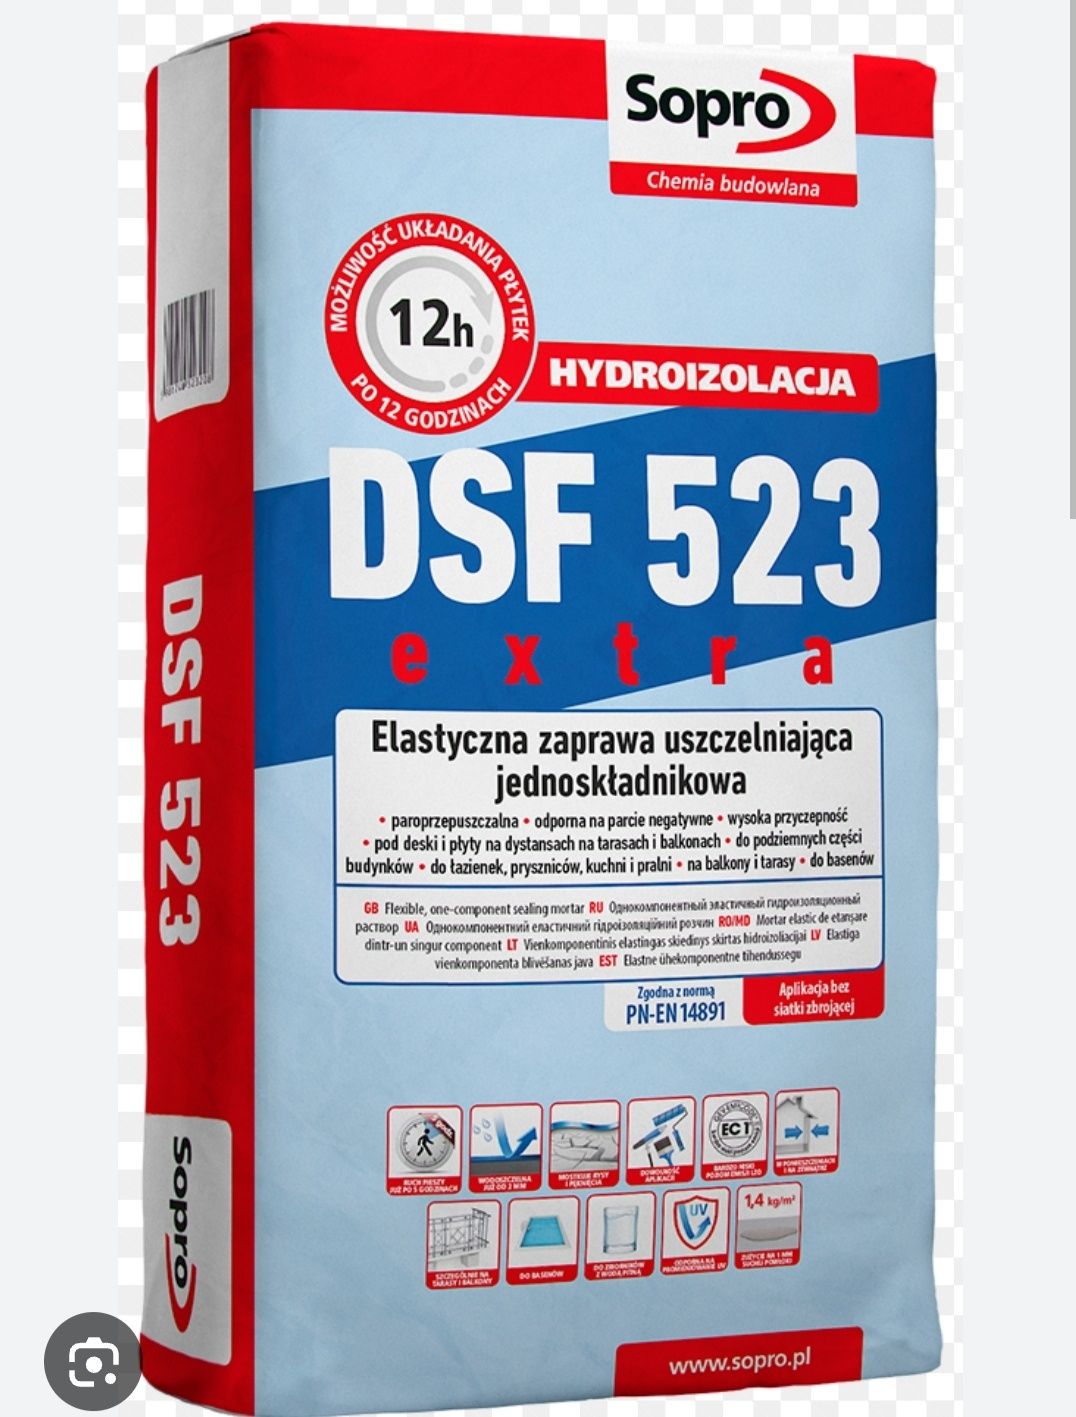 Zaprawa Sporo DSF535